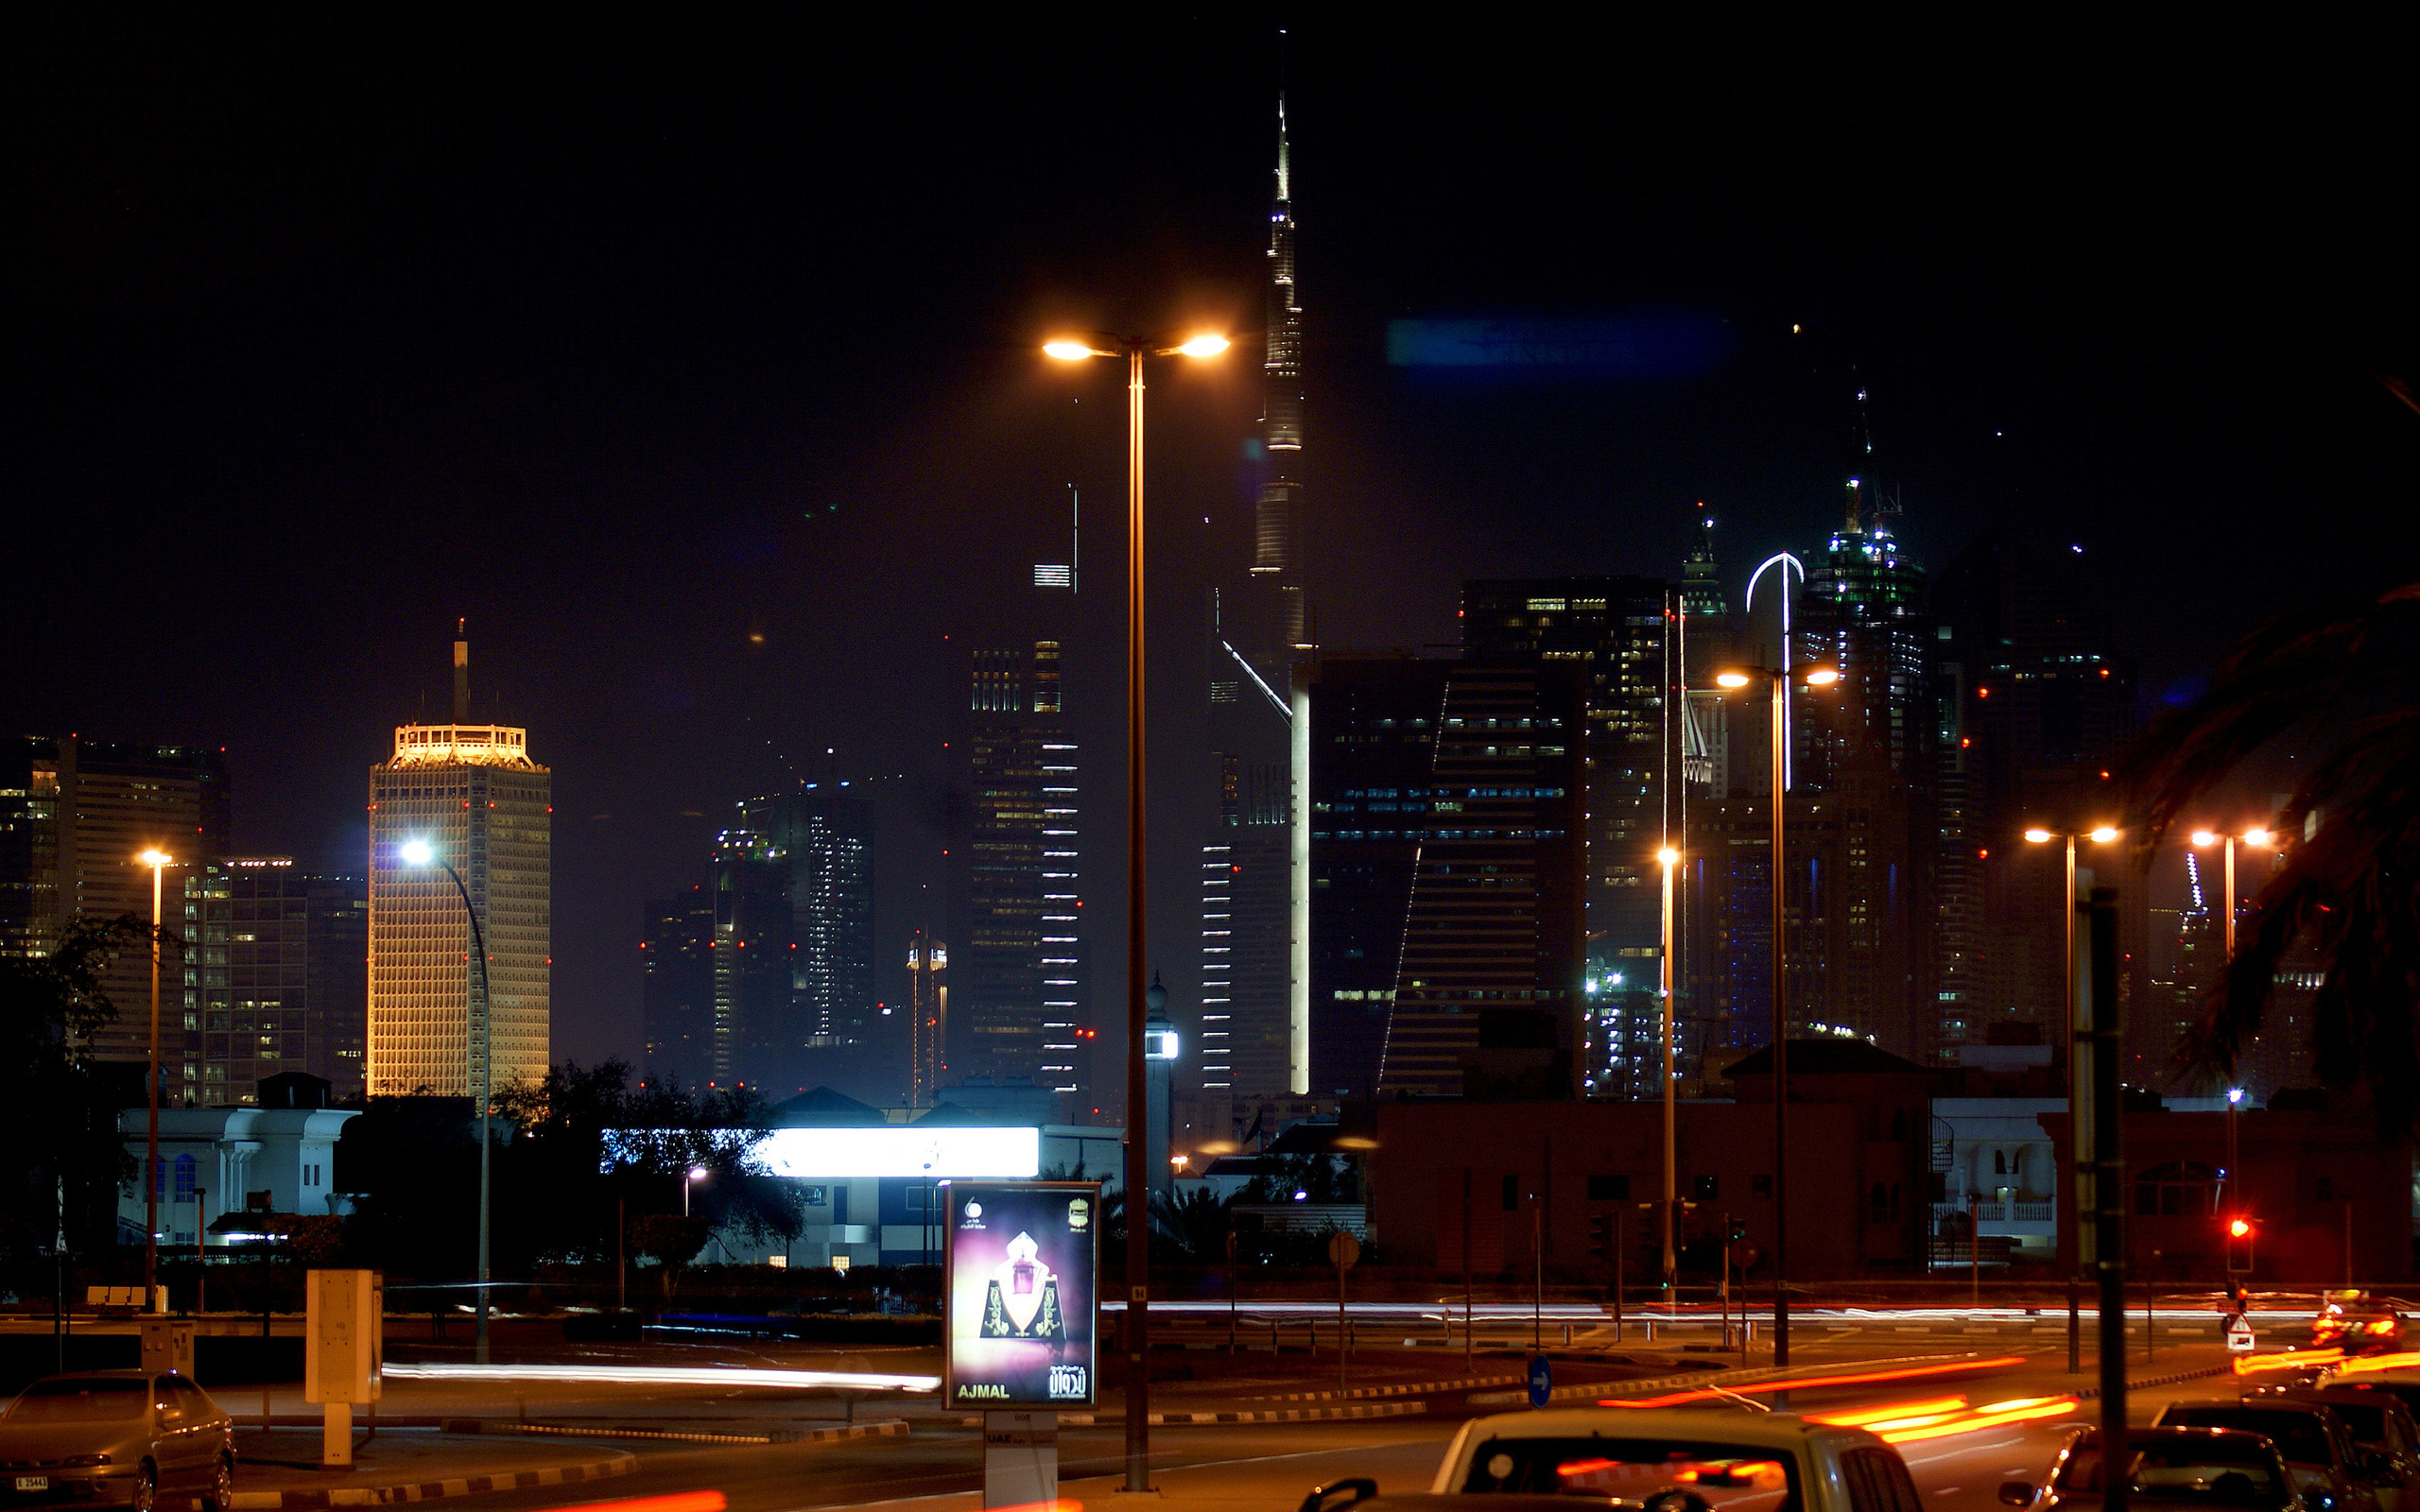 Скачать обои бесплатно Города, Дубай, Сделано Человеком картинка на рабочий стол ПК